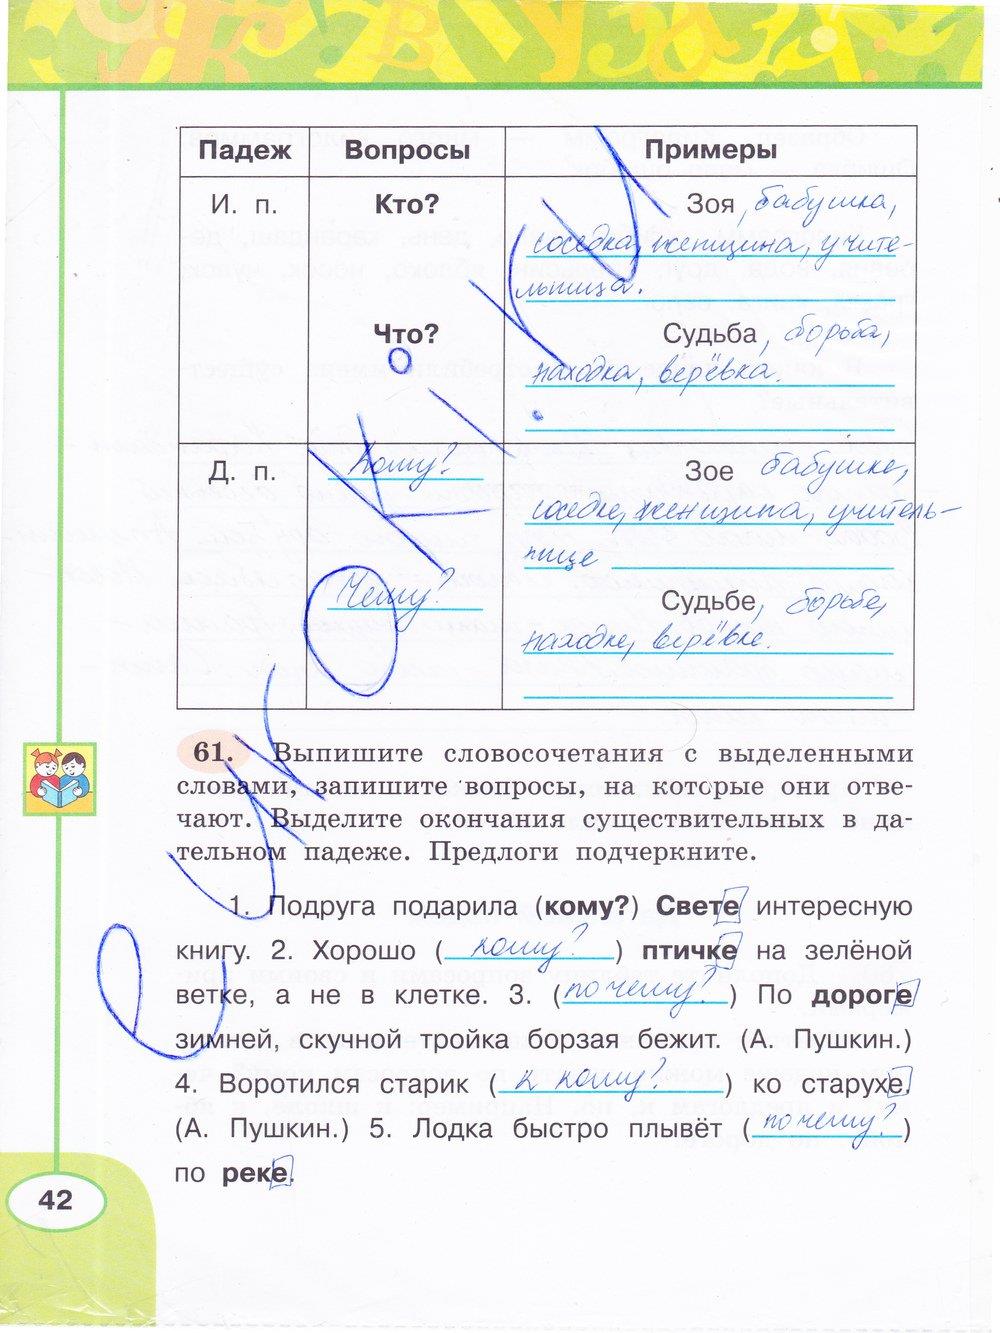 гдз 3 класс рабочая тетрадь часть 2 страница 42 русский язык Климанова, Бабушкина